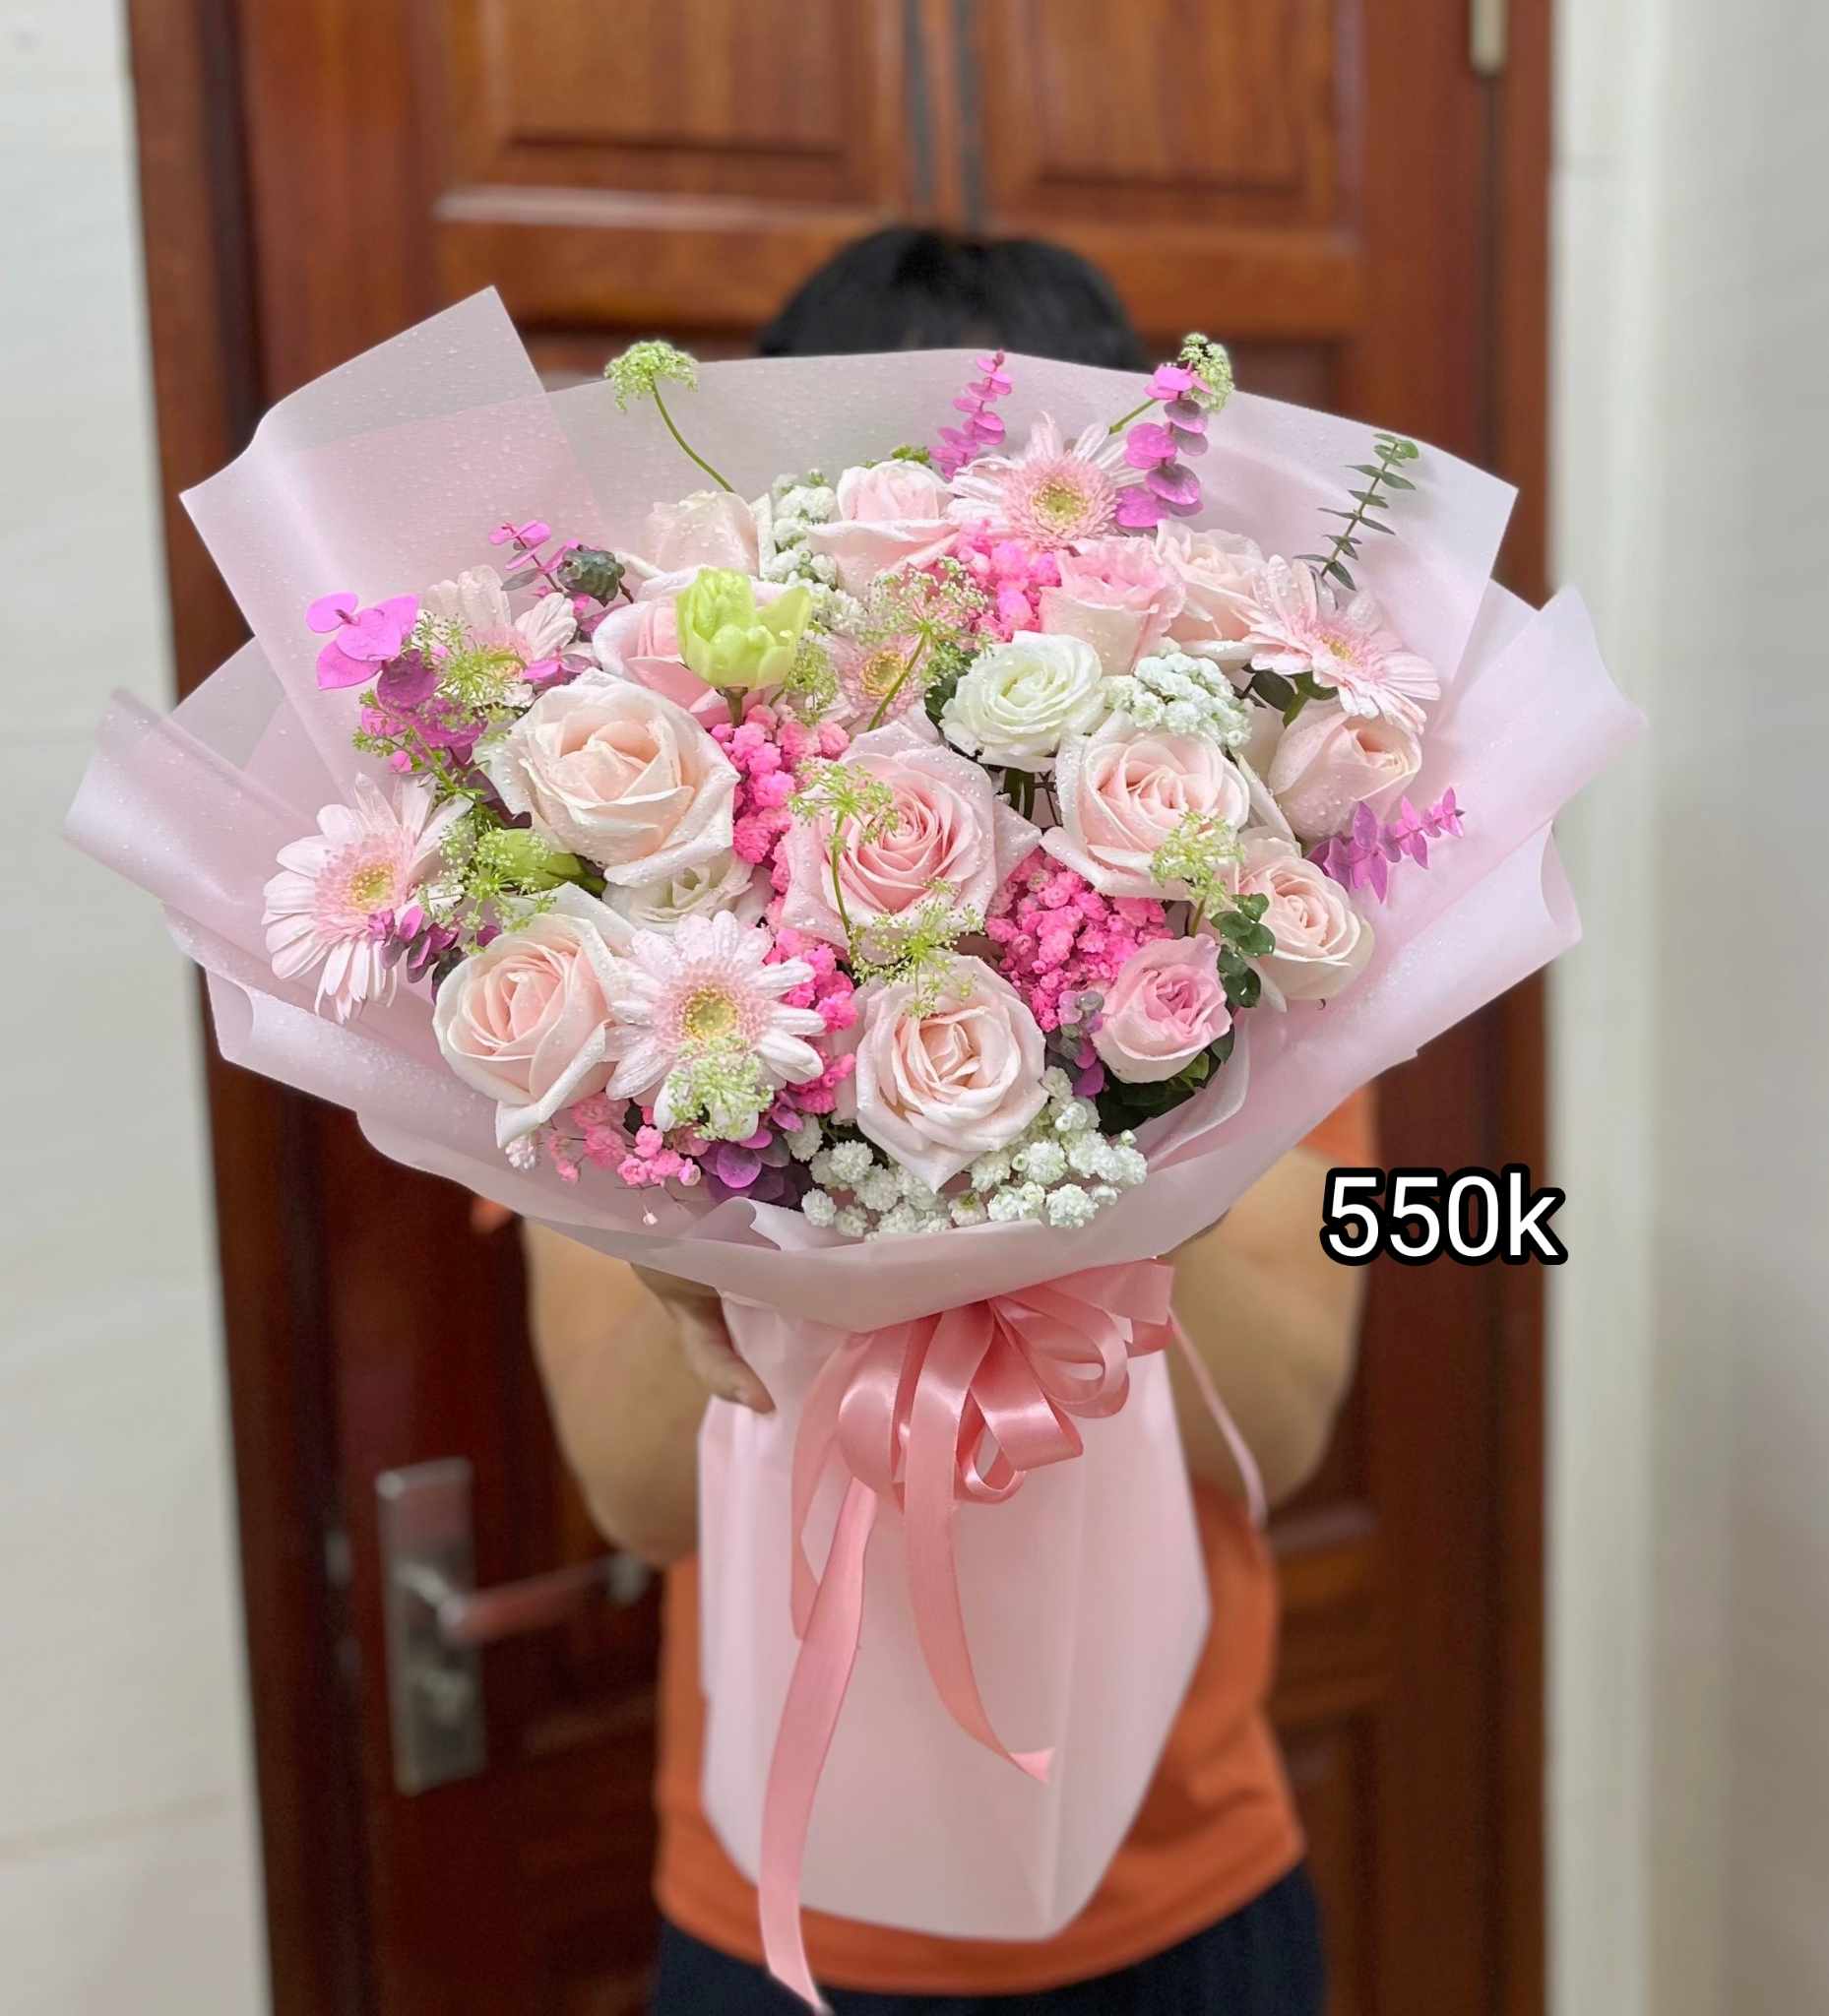 Những bó hoa tươi với nhiều tone màu sắc khác nhau để tặng nhân dịp 20/10 tại Hà Nội